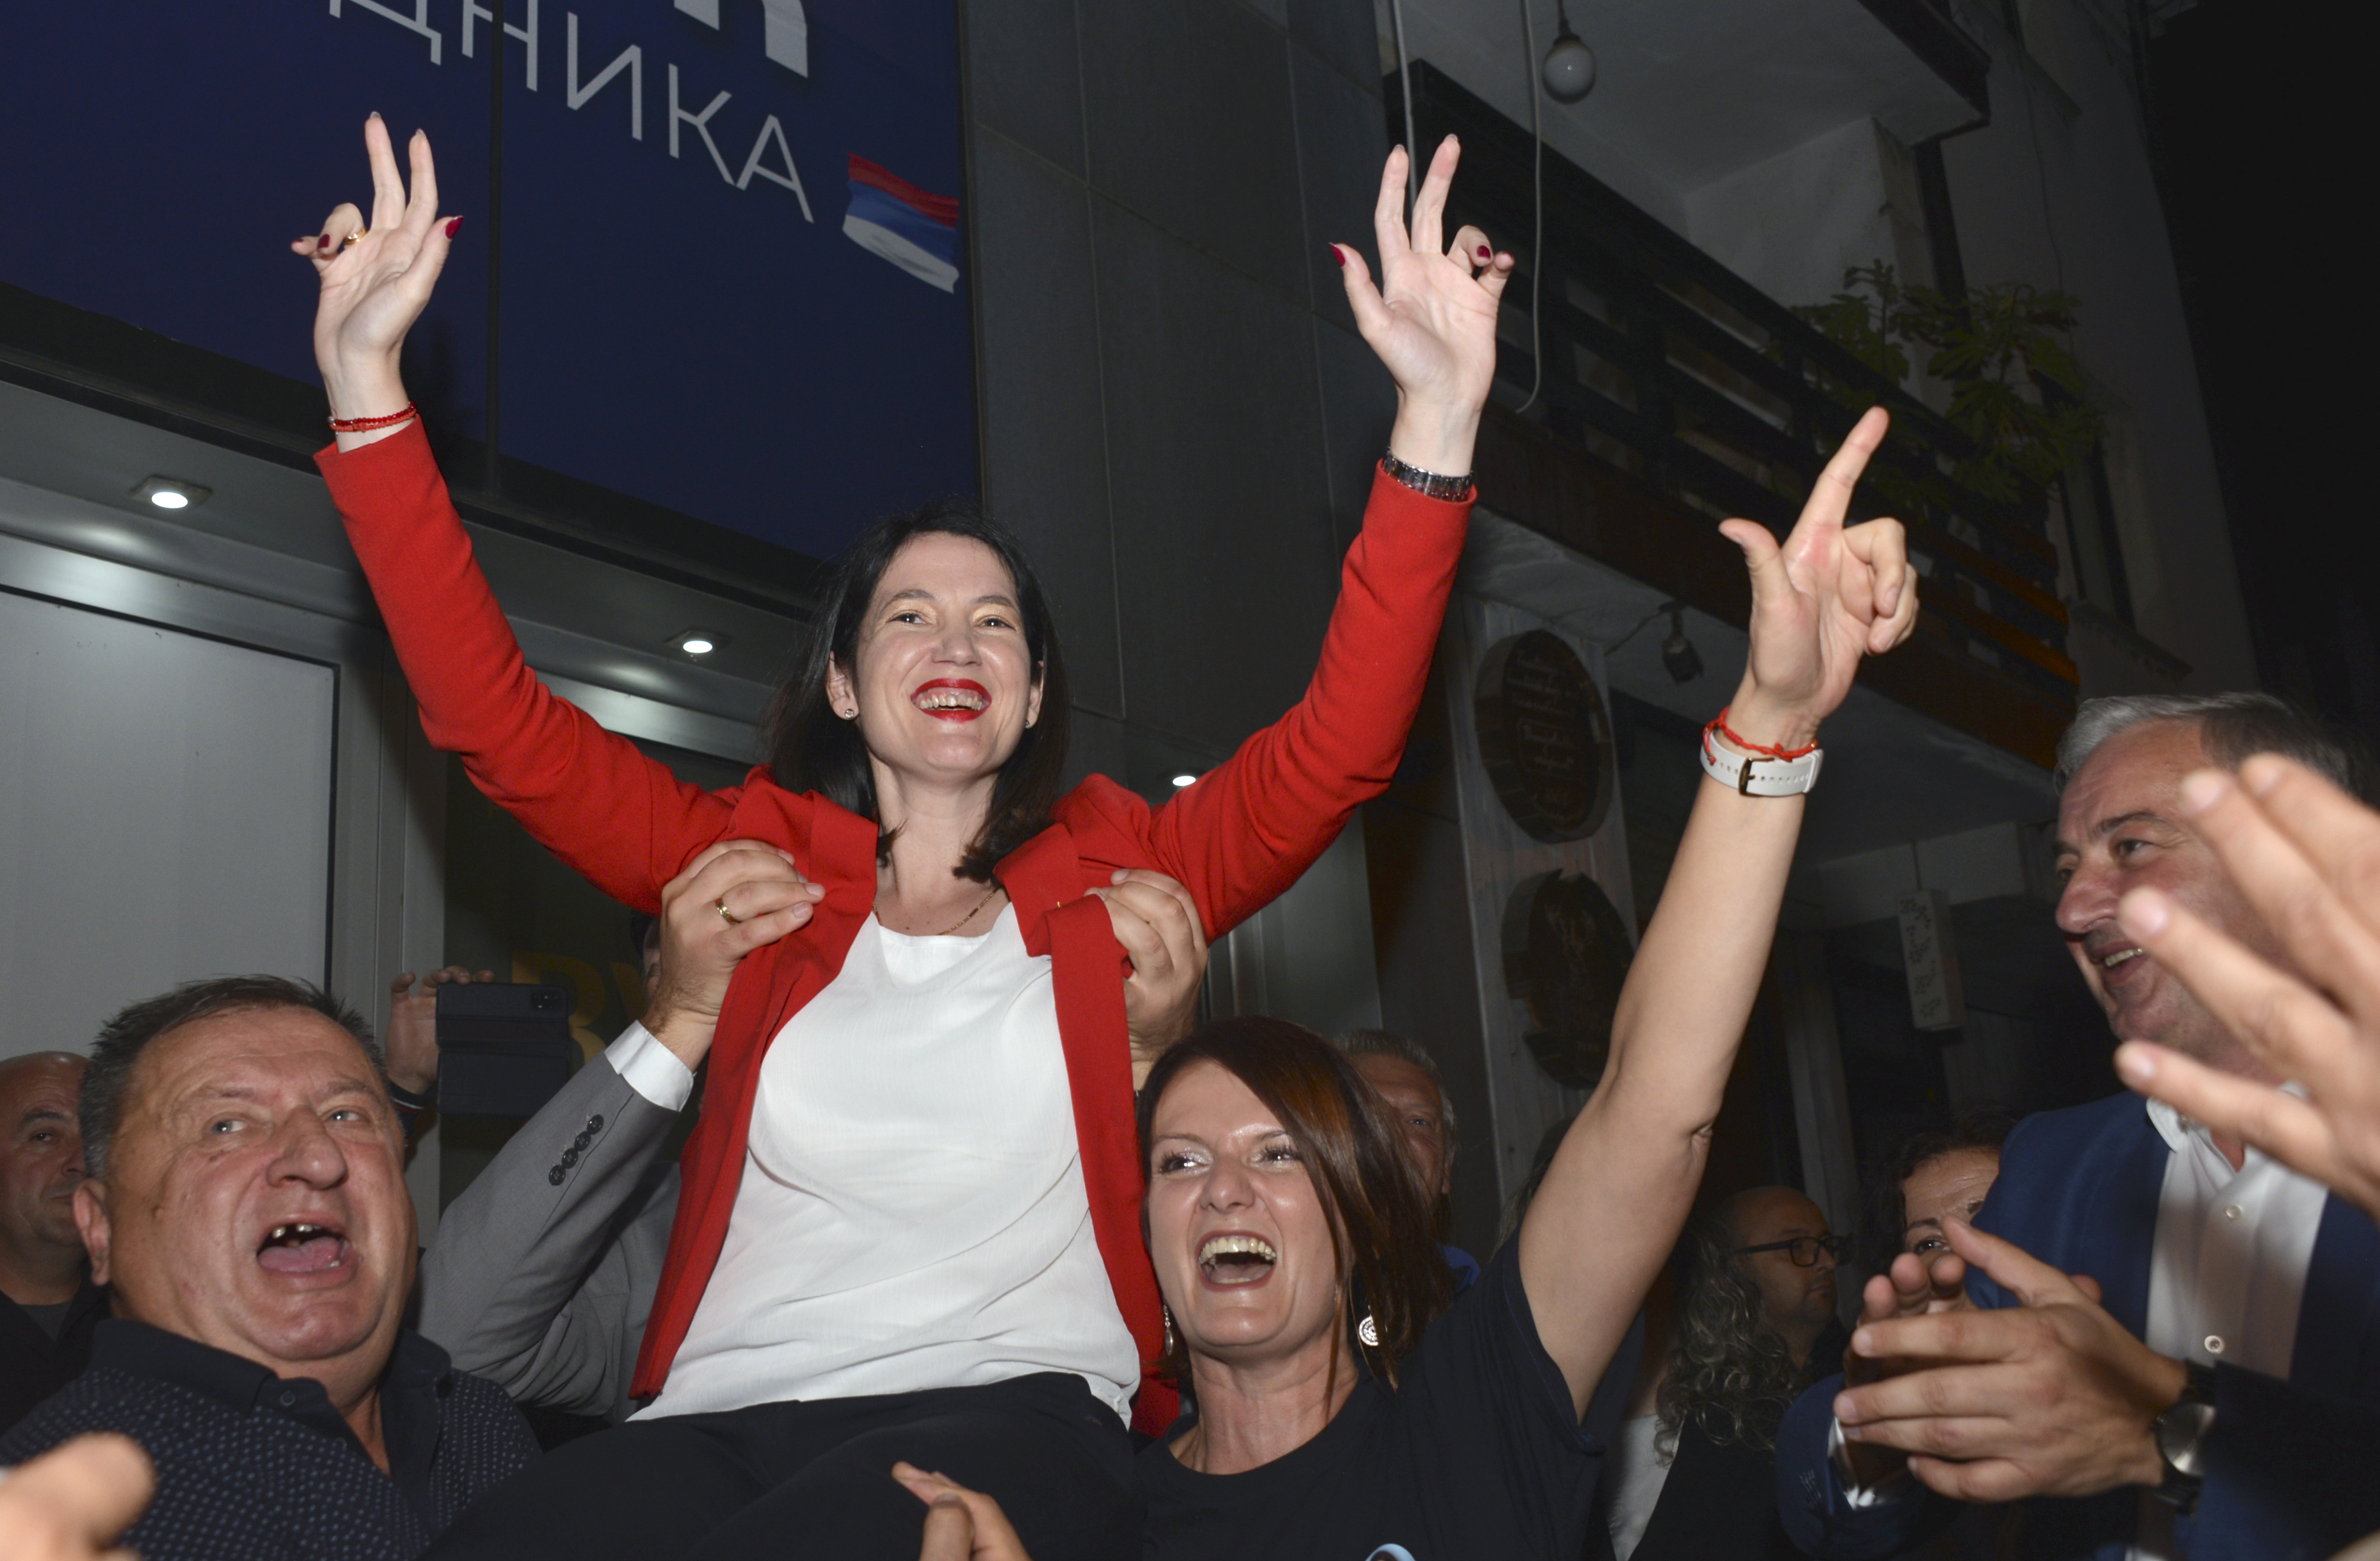 Dopo le elezioni, la Bosnia Erzegovina era in fermento: i due candidati si dichiararono vincitori